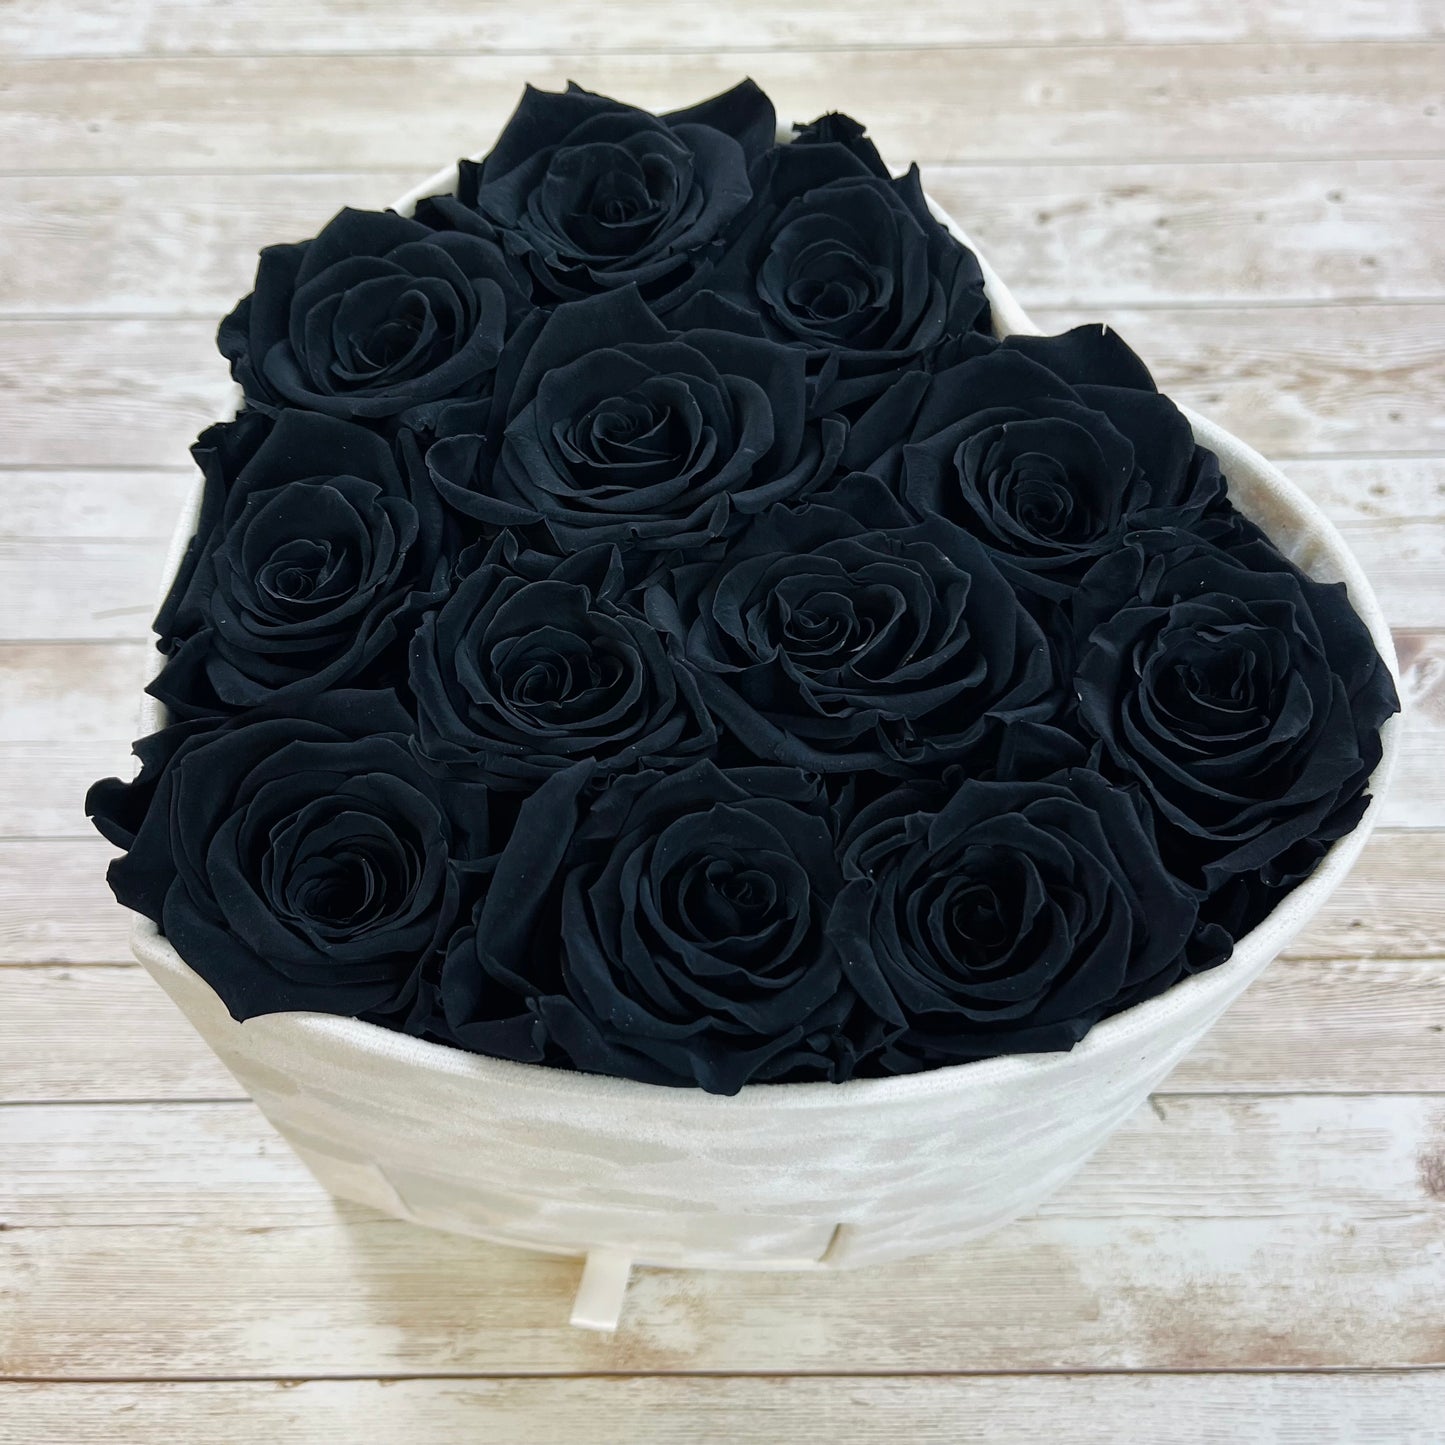 Ivory Velvet Heart Infinity Rose Box - Black One Year RosesBlack Infinity Roses - One Year Roses 